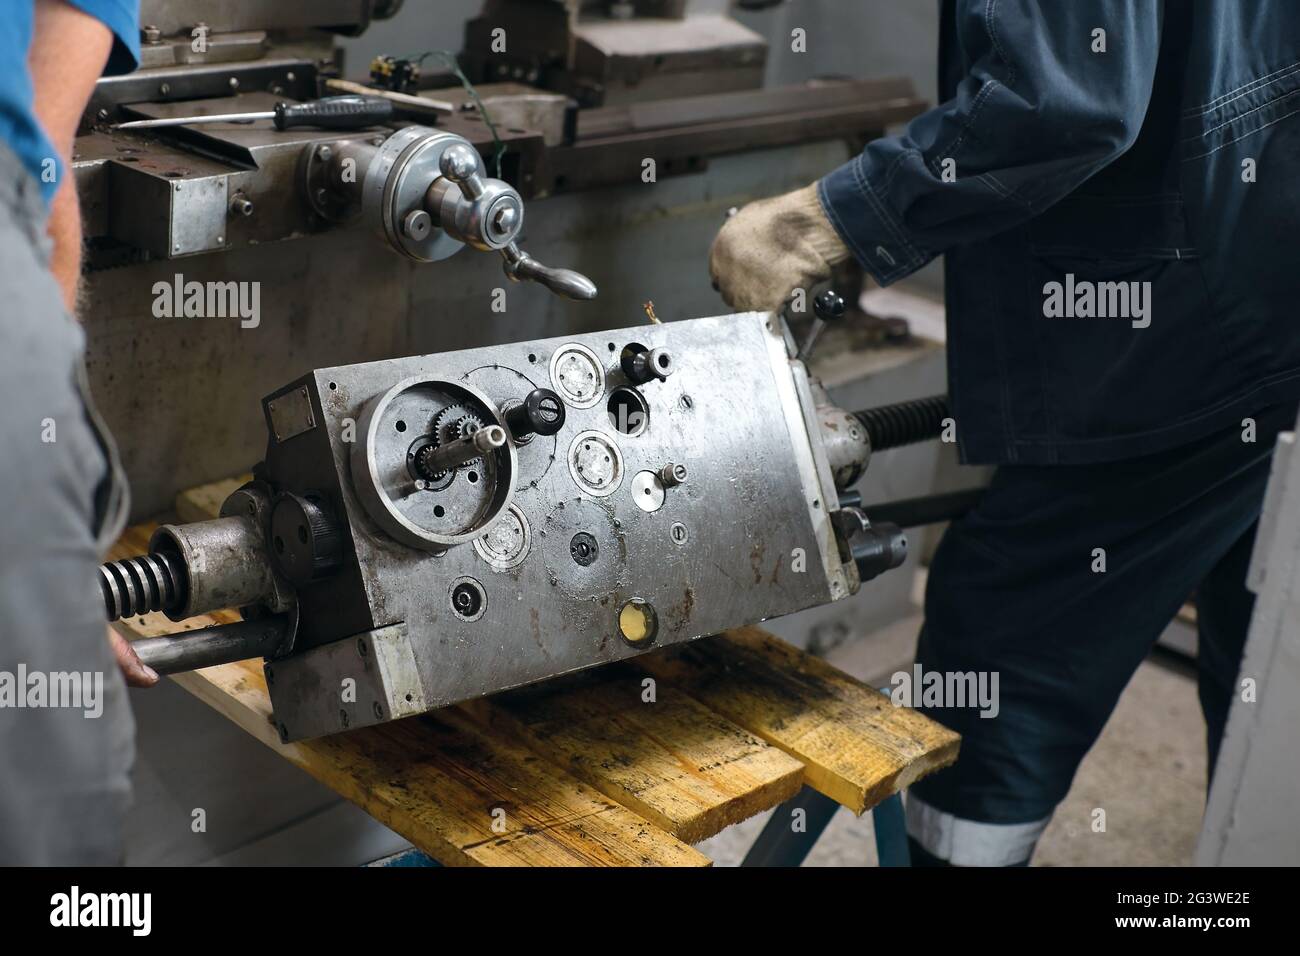 Prevenzione e manutenzione di macchine utensili in officina. Foto Stock